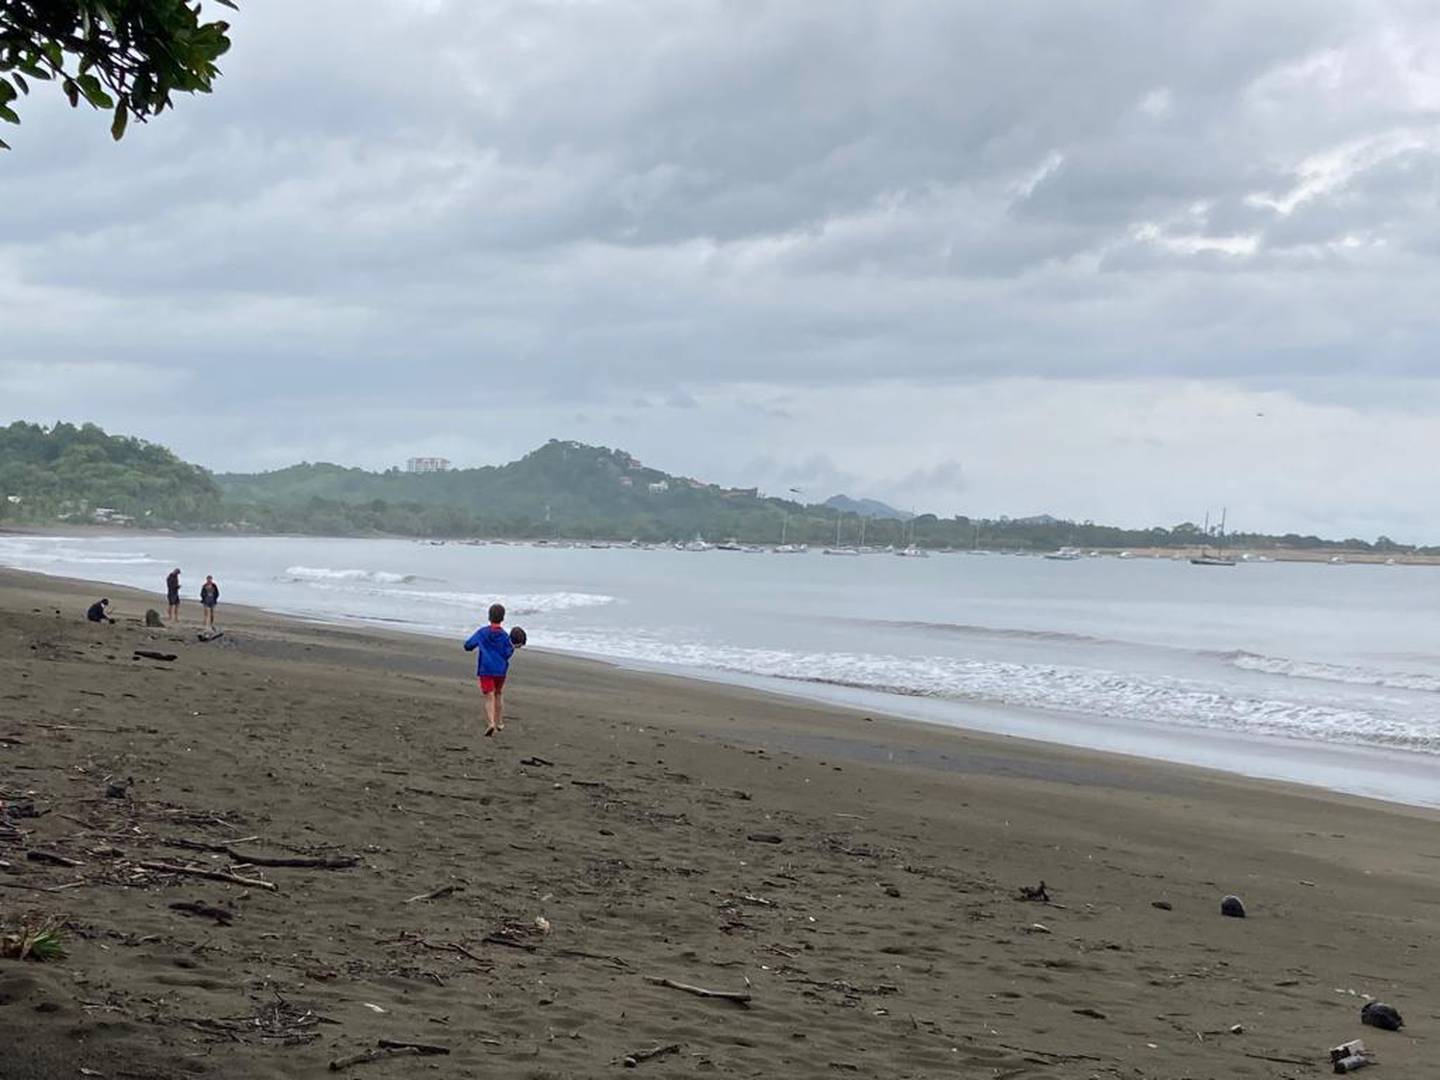 En playa Potrero de Santa Cruz, Guanacaste, desde temprano cae una llovizna y el cielo permanece nublado. Se espera que durante la tarde llueva en todo el Pacífico por la inestabilidad que deja la tormenta Bonnie. Foto: Lidiette Vásquez.